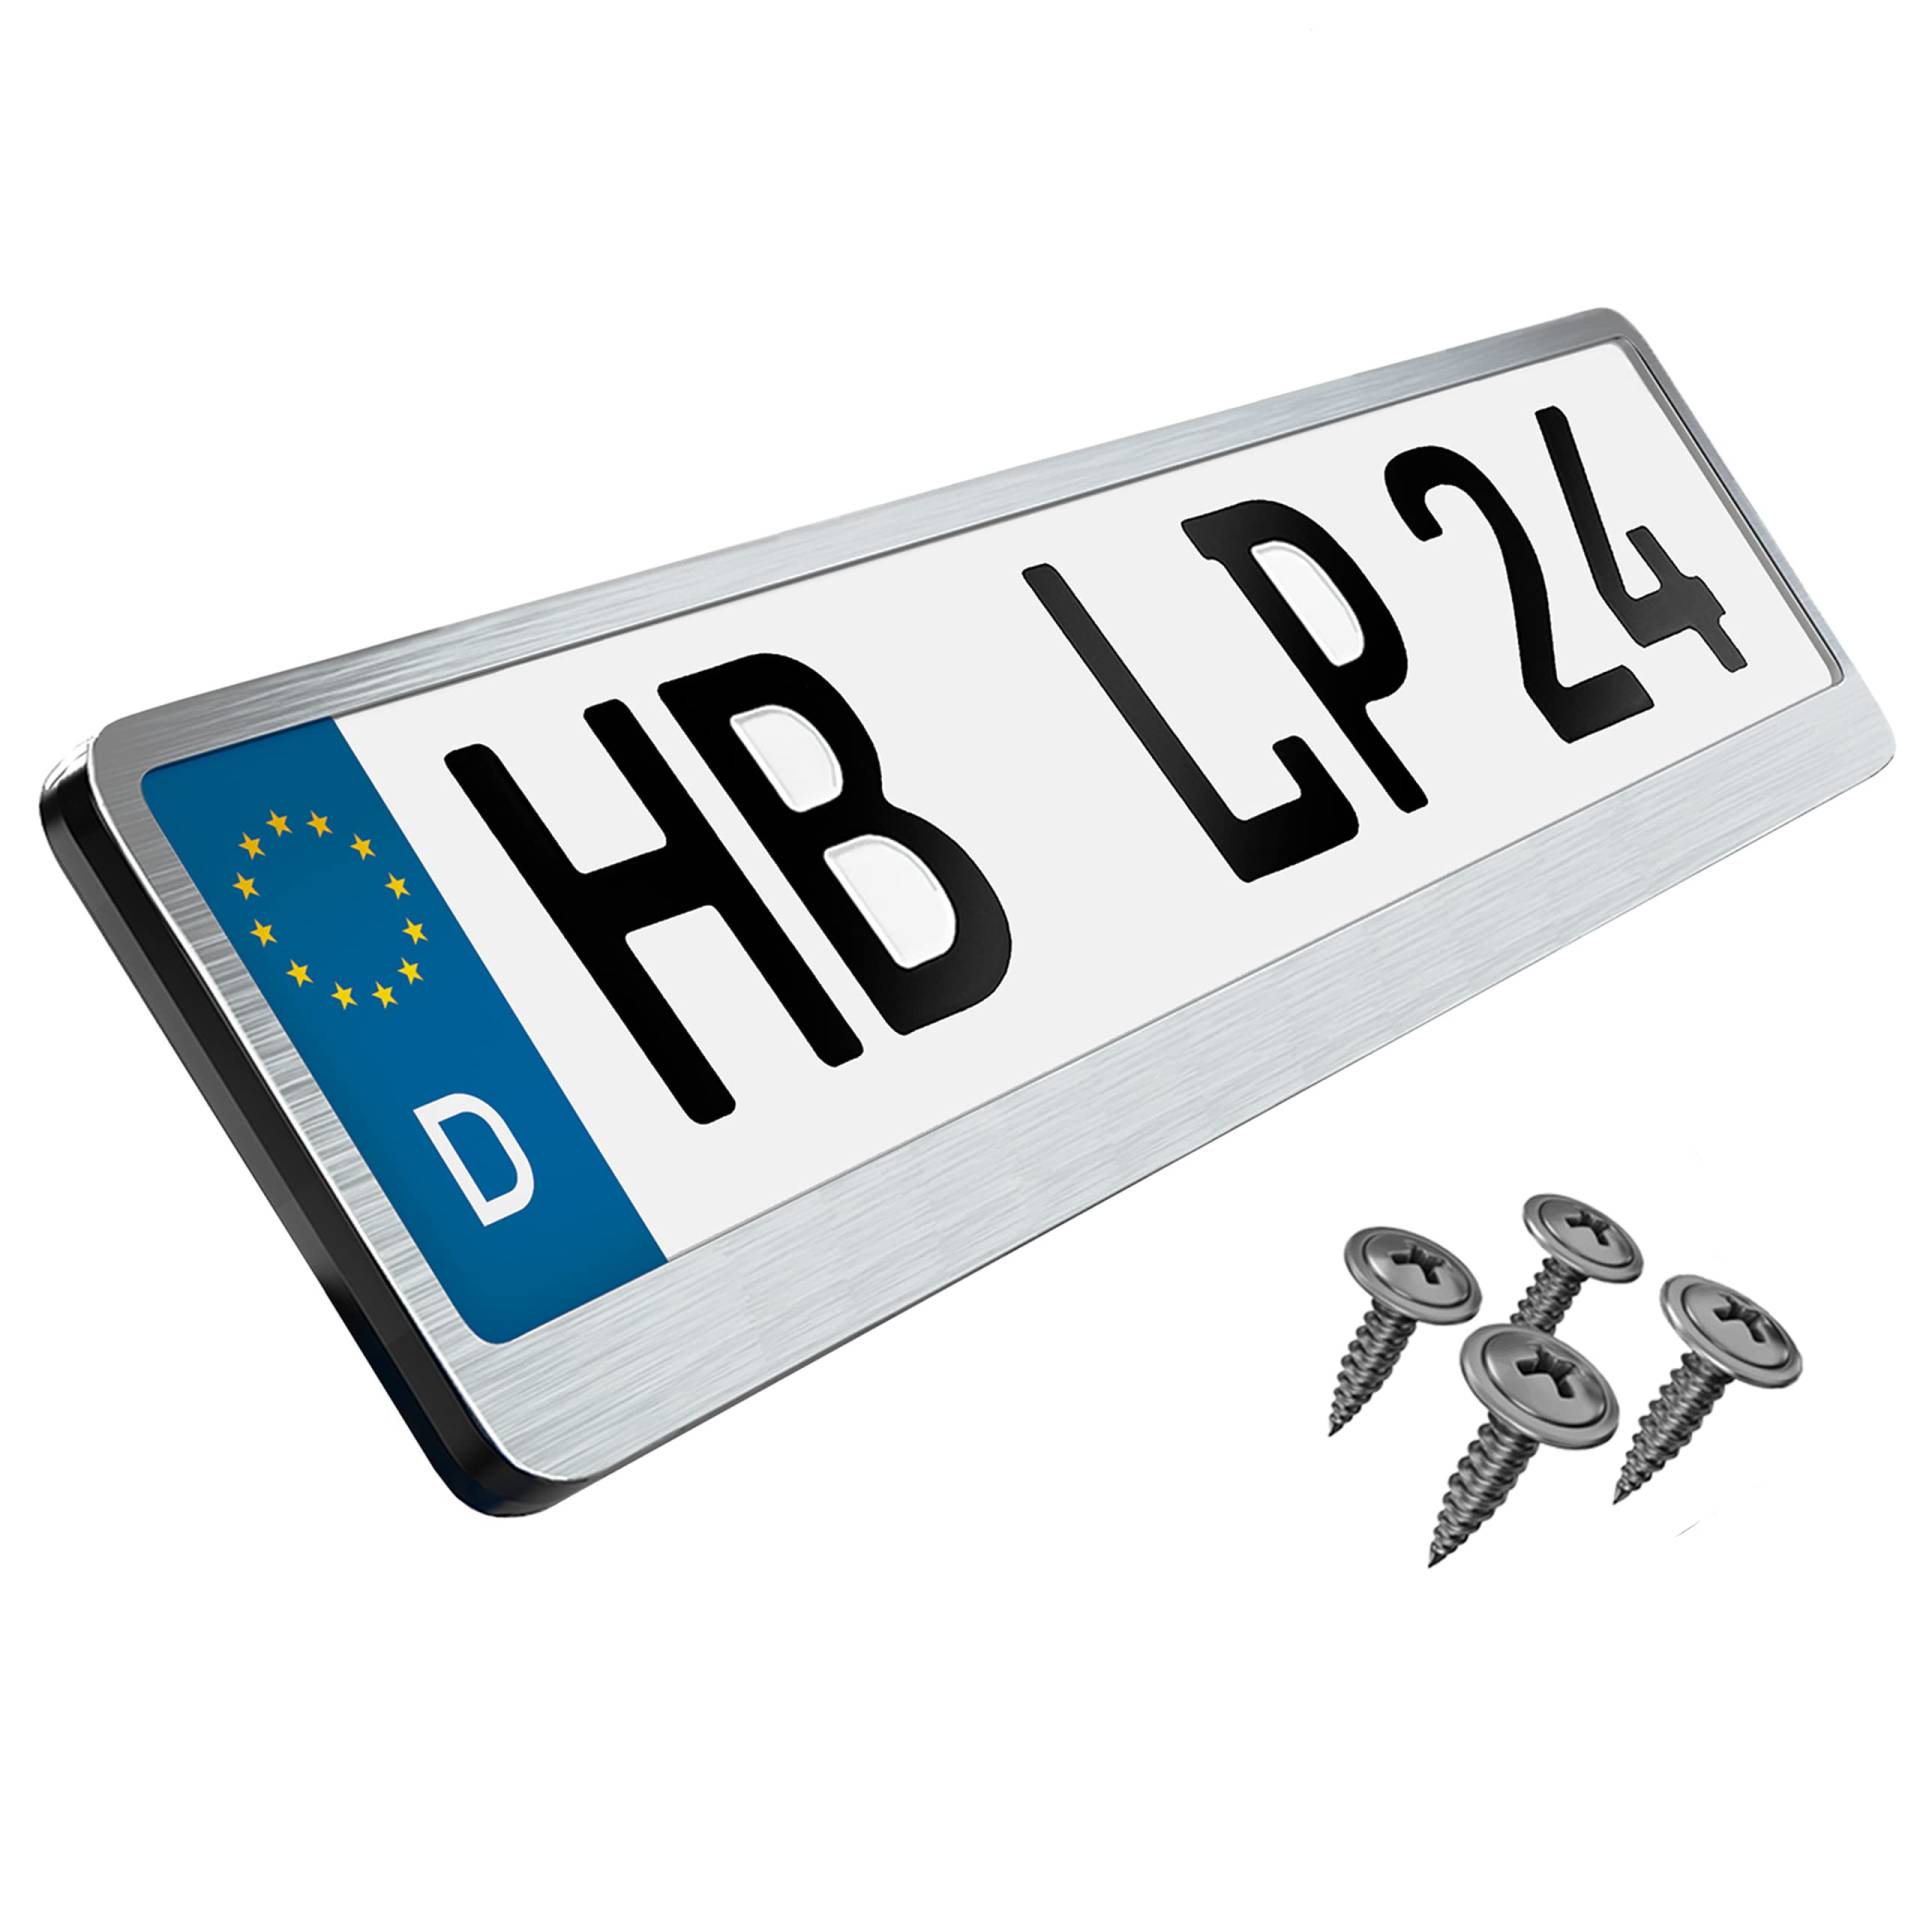 L&P Premium Kennzeichenhalter Auto Nummernschildhalter Edelstahl INOX V2A Kennzeichenverstärker Kennzeichenhalterung Nummernschildhalterung Verstärker Kennzeichen Nummernschild (Edelstahl gebürstet) von L & P Car Design